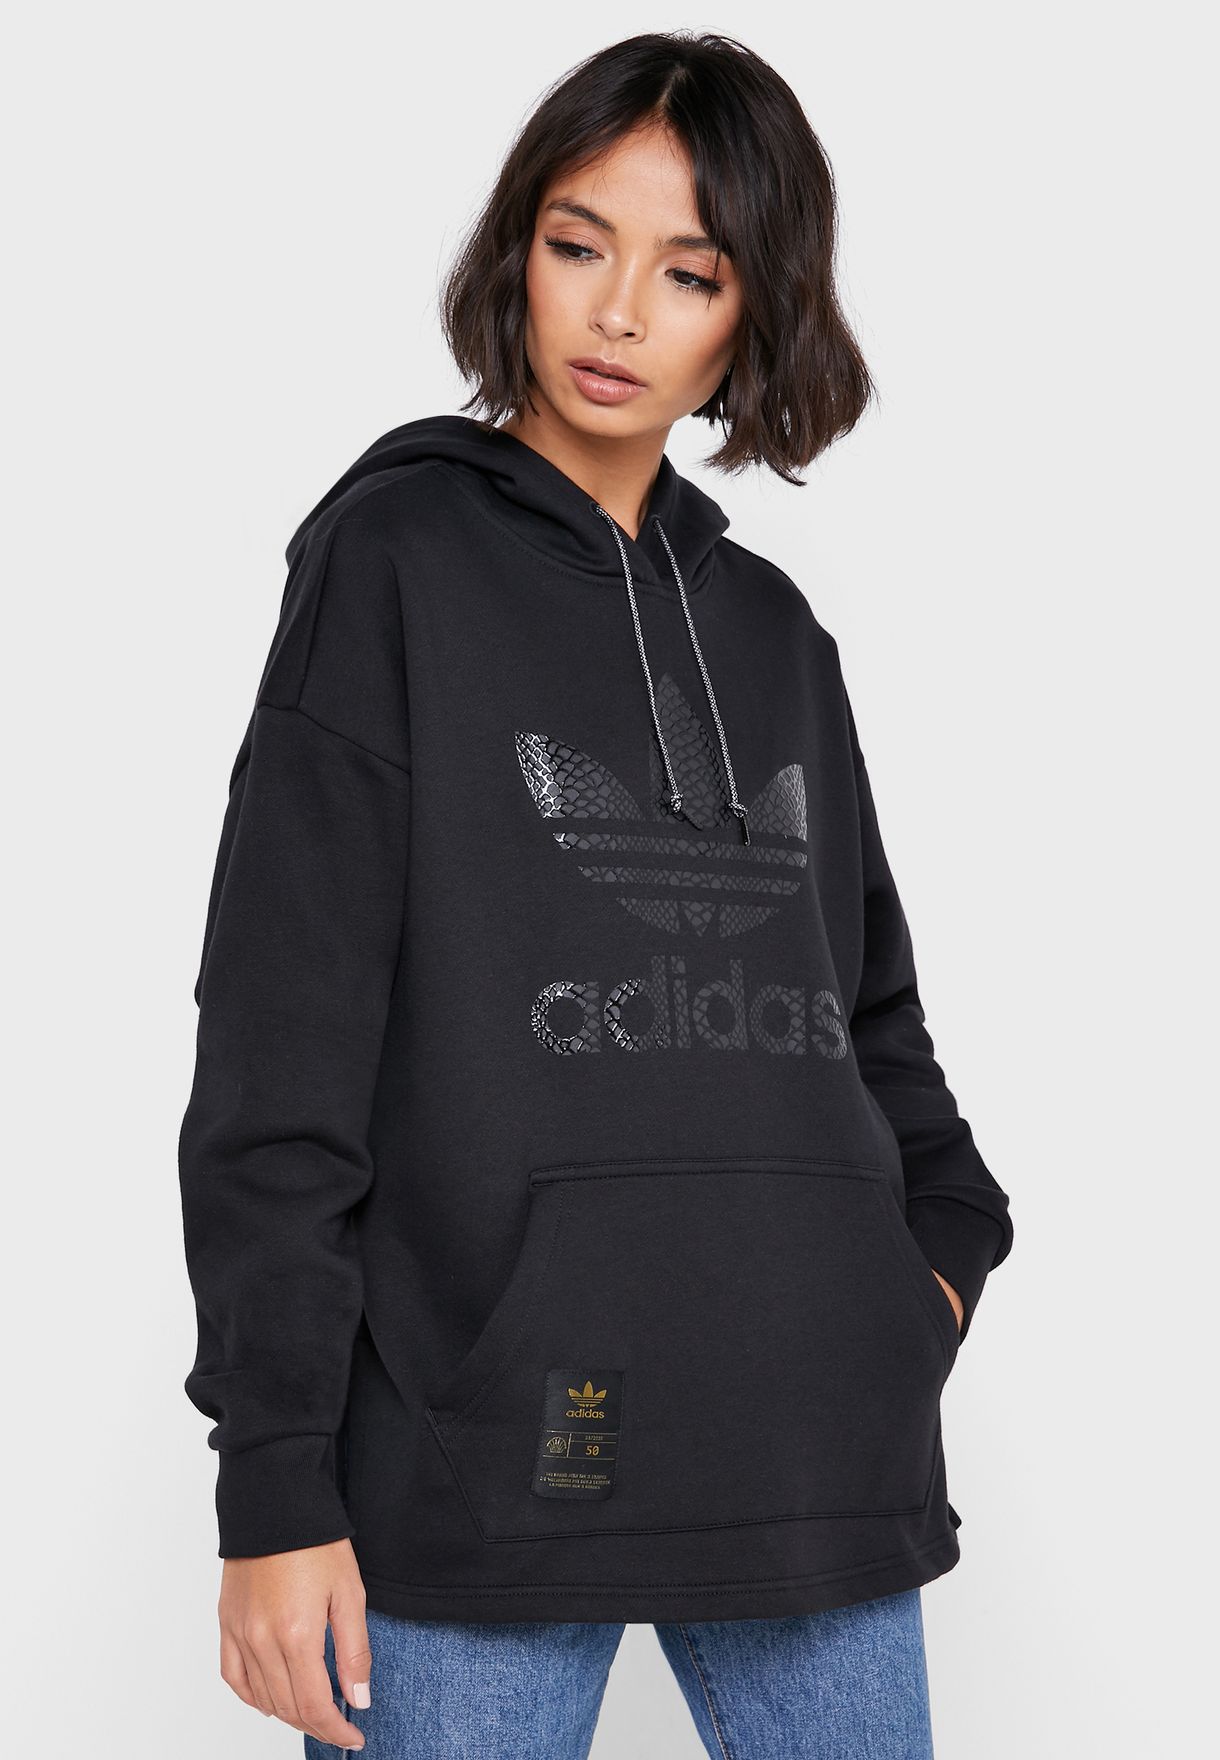 adidas hoodie women